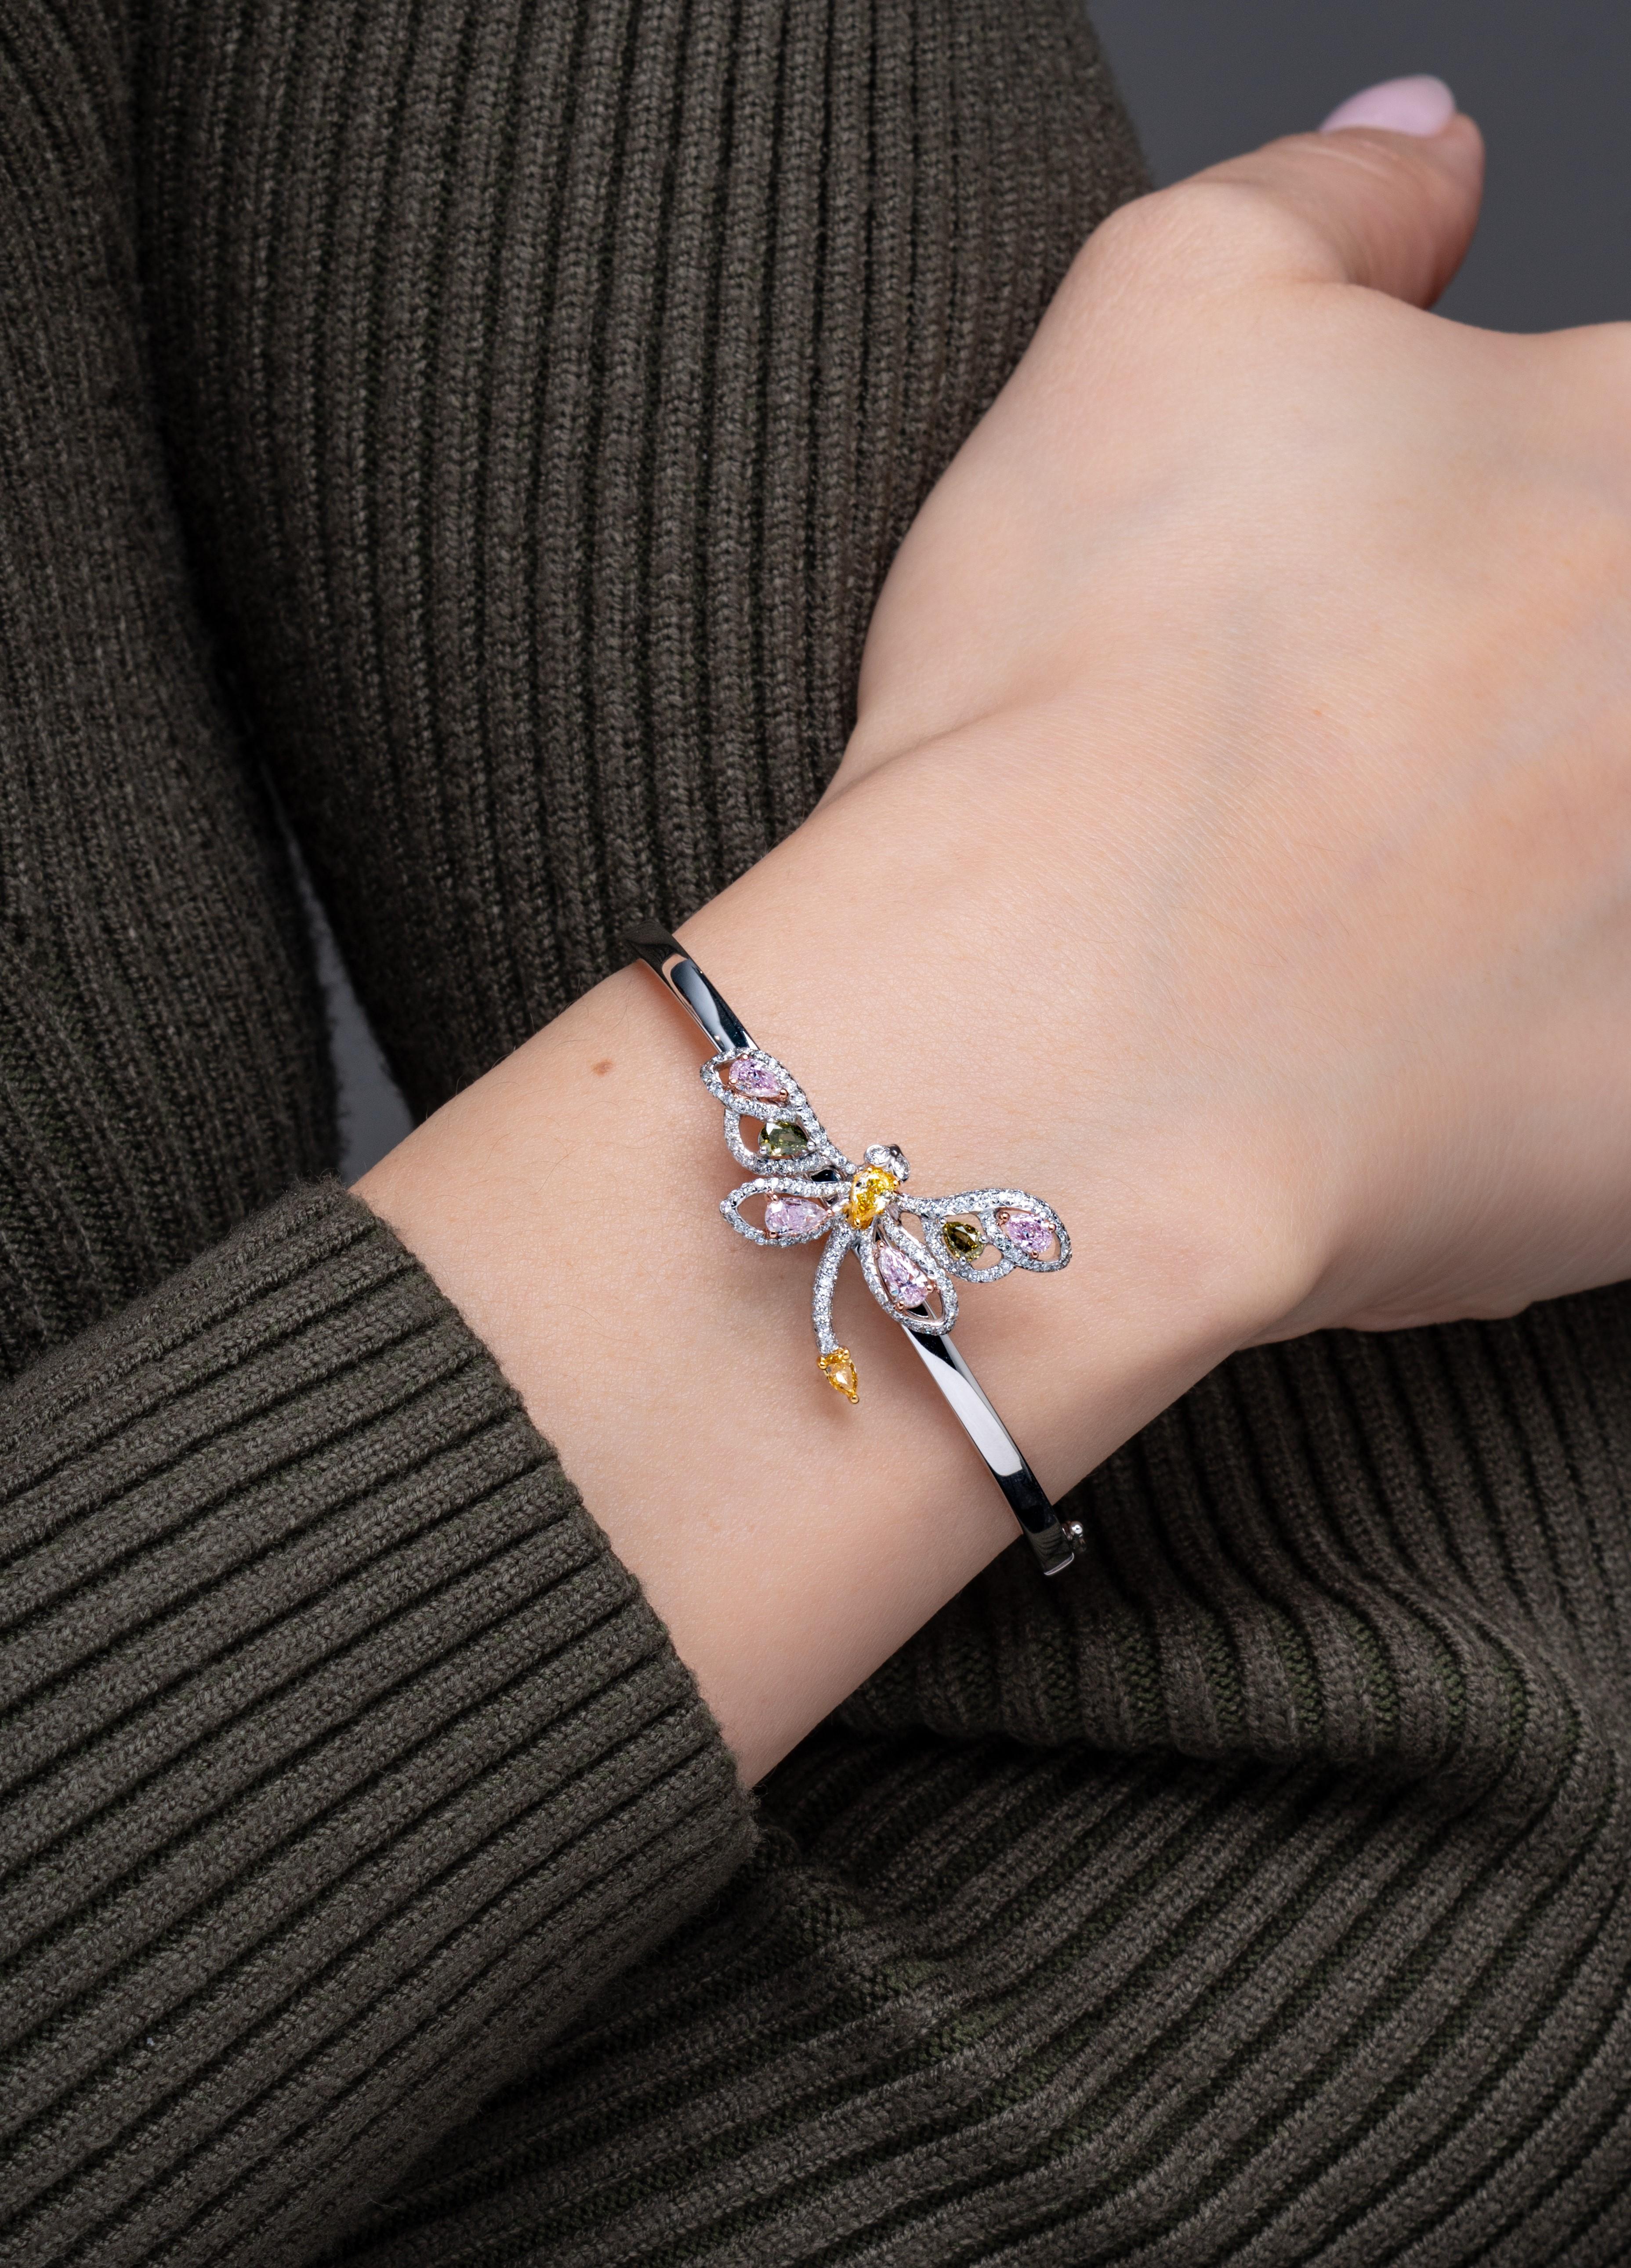 Vihari Jewels a créé ce bracelet fantaisiste en diamants libellules, composé d'un ensemble de diamants de couleur magnifiquement assortis : un diamant poire orange de 0,09 carat, quatre diamants poire roses totalisant 0,60 carat, deux diamants poire